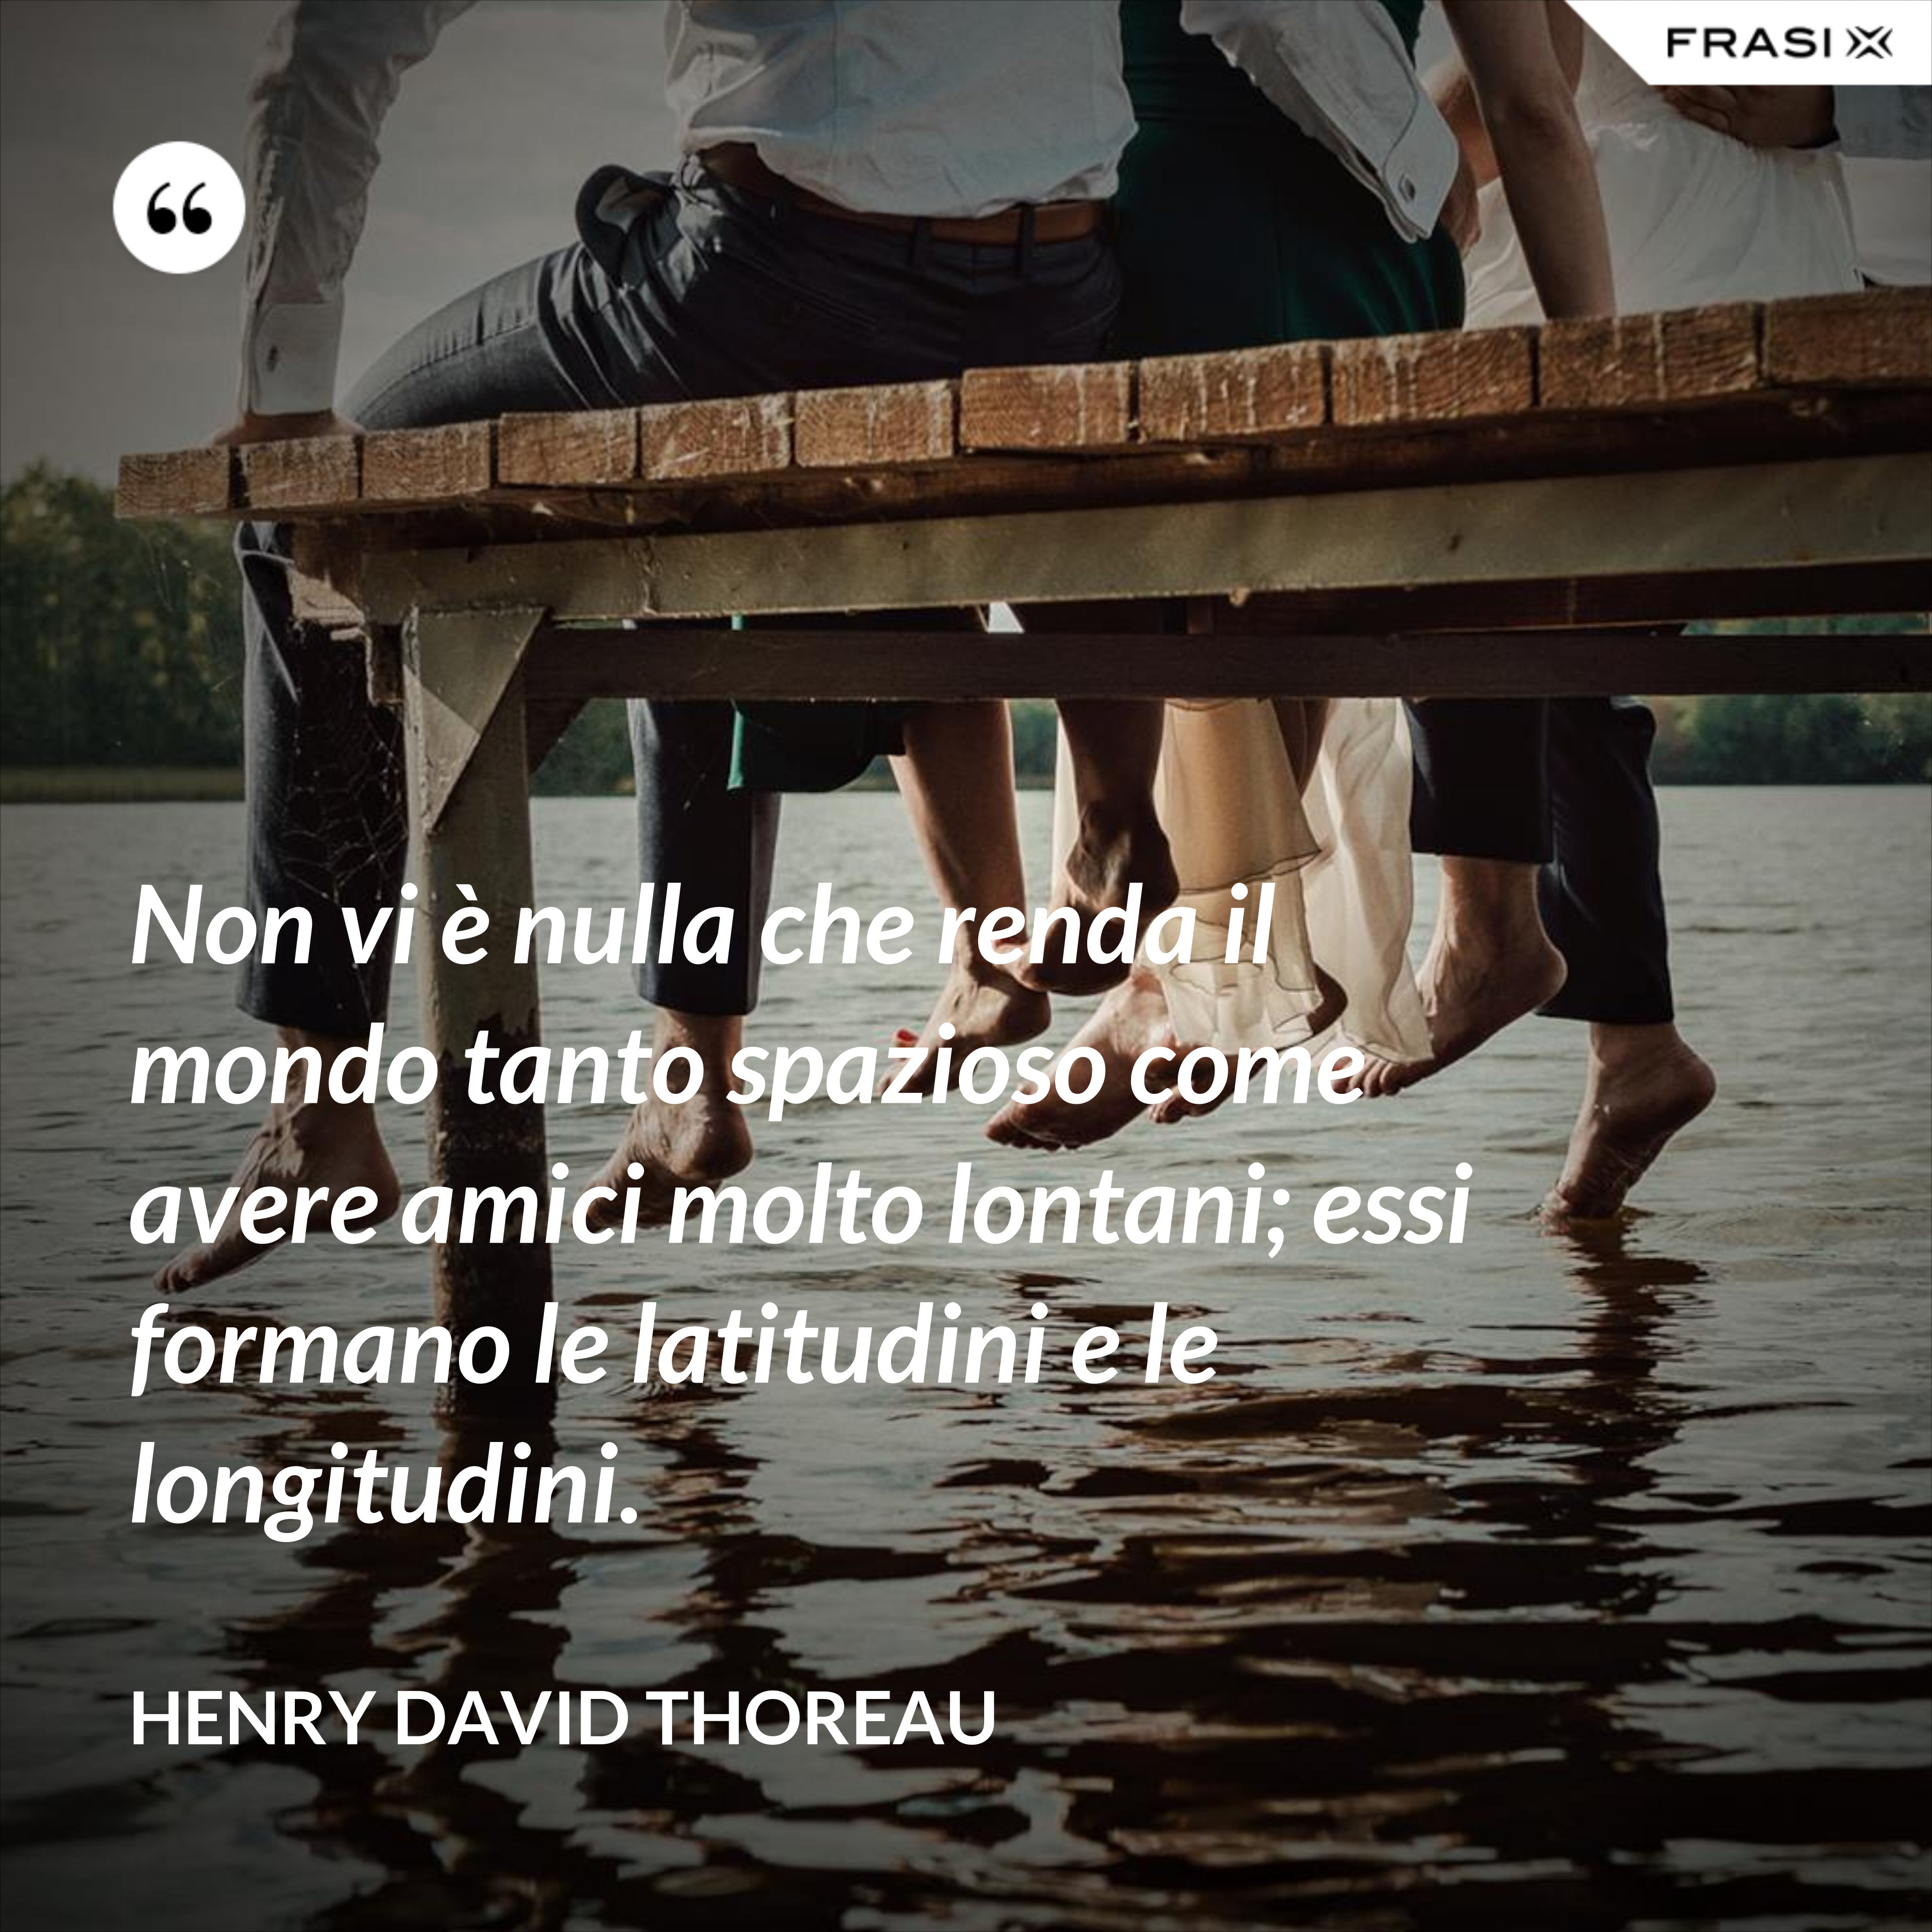 Non vi è nulla che renda il mondo tanto spazioso come avere amici molto lontani; essi formano le latitudini e le longitudini. - Henry David Thoreau